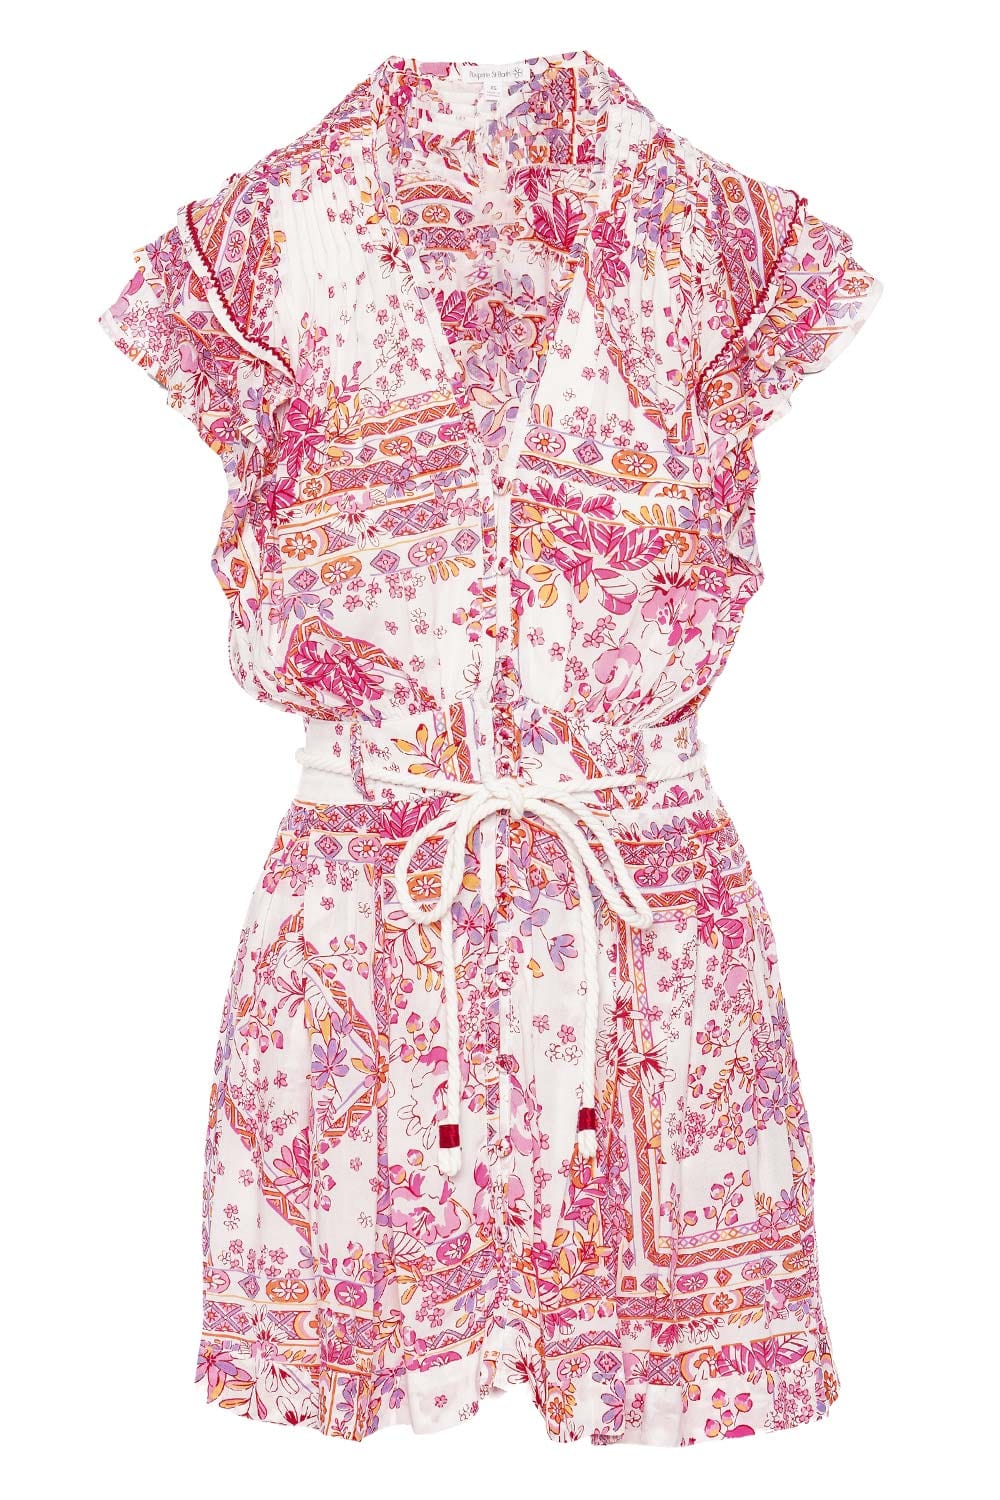 Poupette St Barth Bice Pink Foulard Ruffled Mini Dress